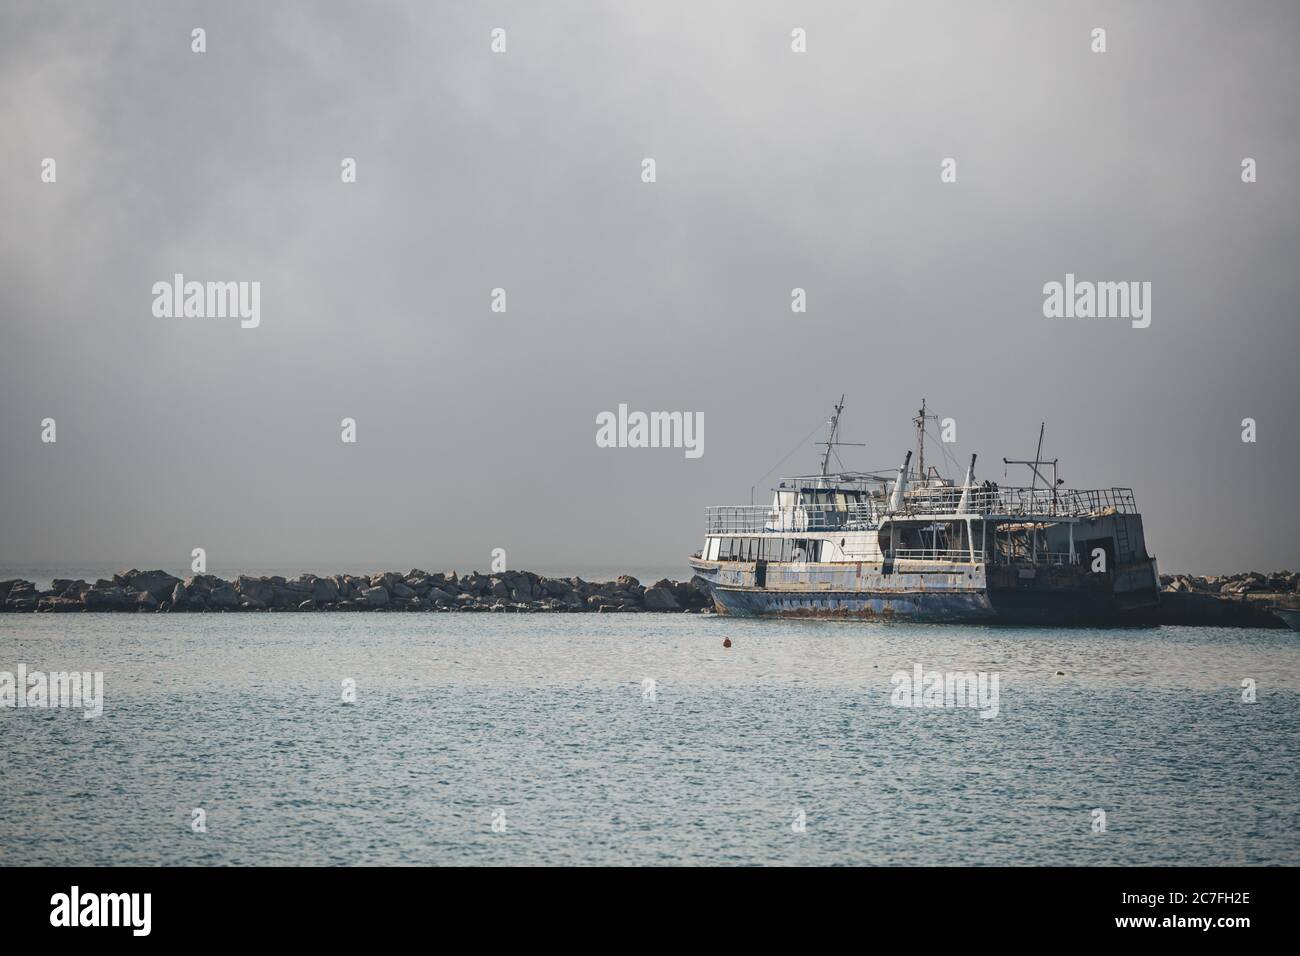 Vecchia nave abbandonata quasi il naufragio ormeggio sulla superficie del Mar Ionio nel porto dell'isola greca di Zante in mattinata nebbiosa Foto Stock